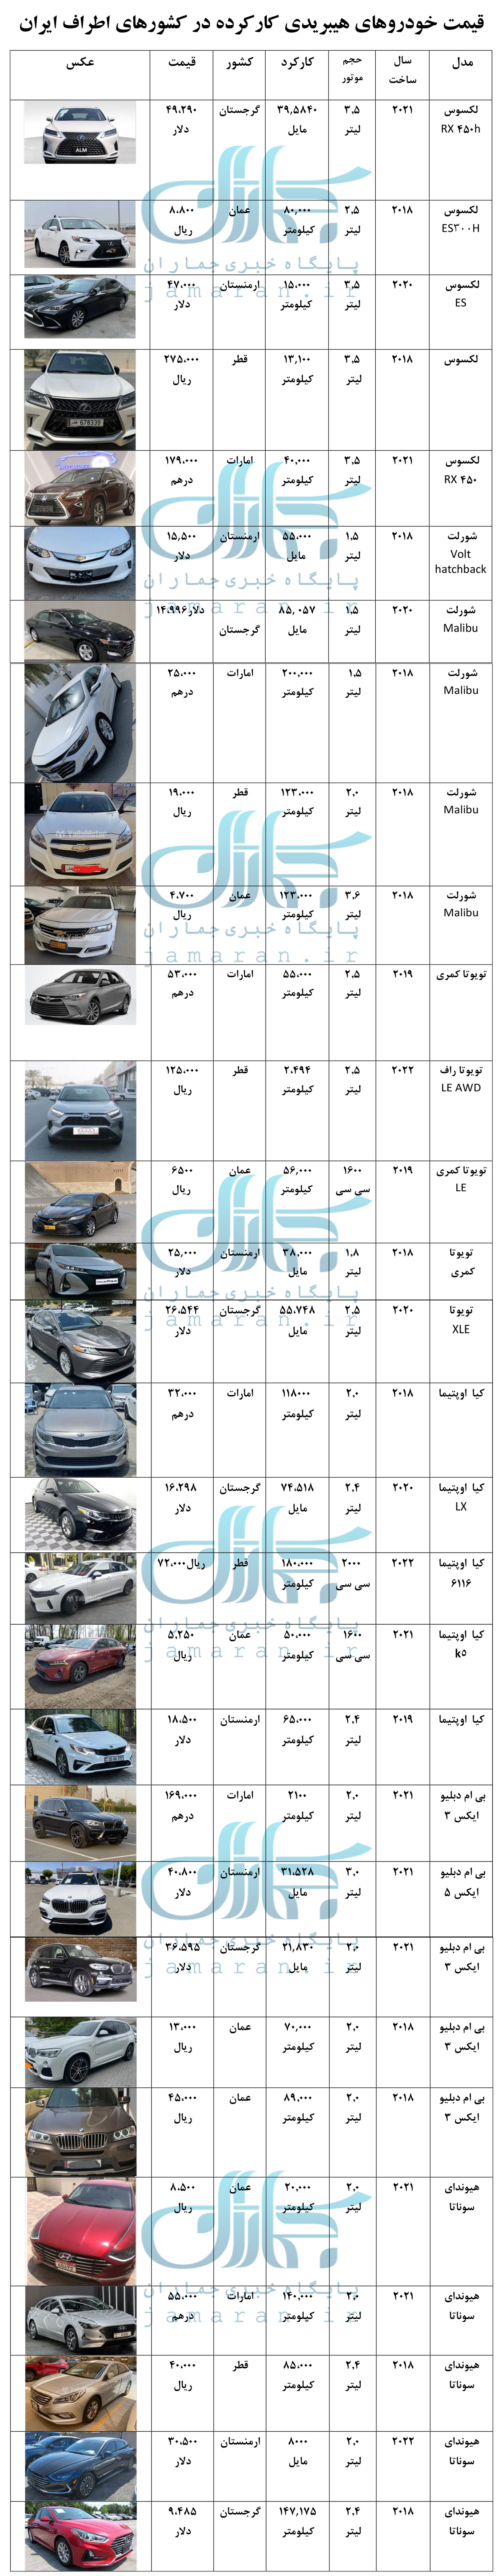 قیمت خودروهای کارکرده هیبردی در اطراف ایران